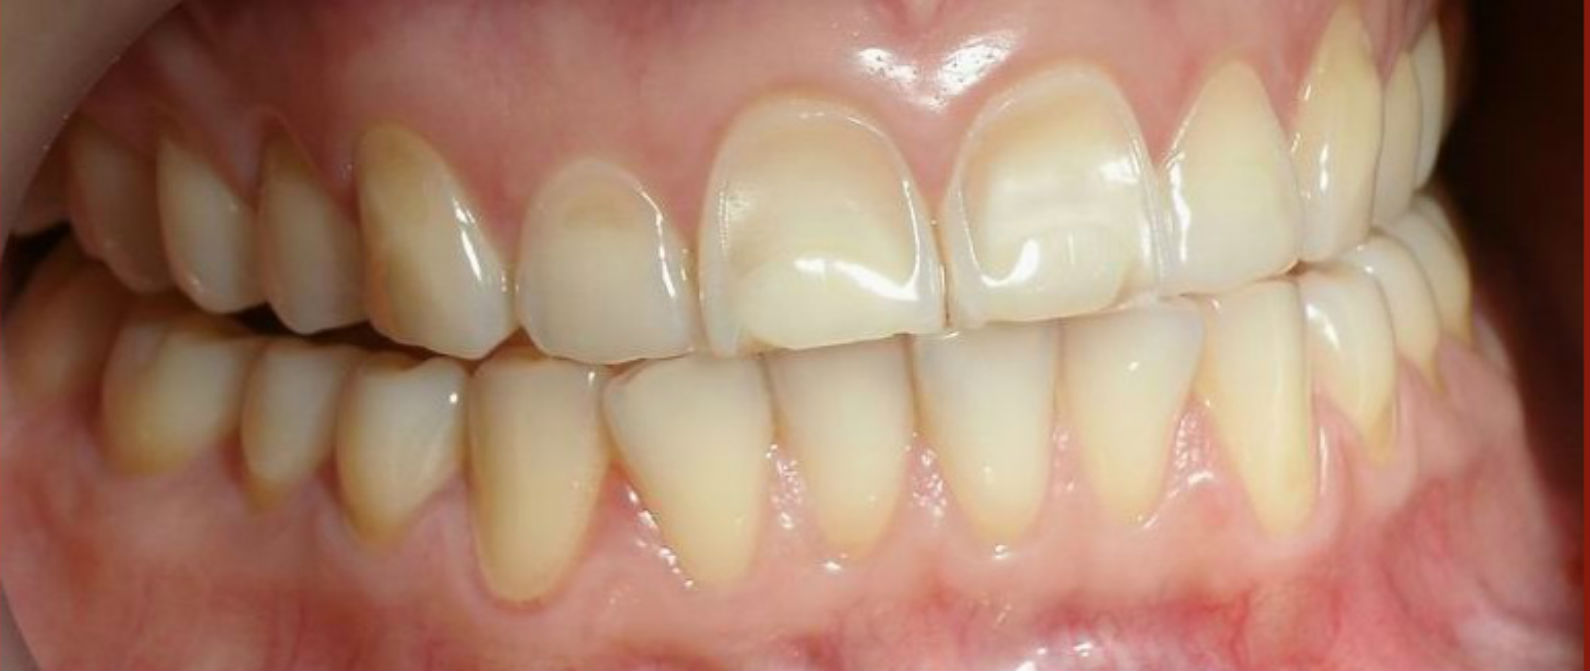 Erosión dental y lo que lo ocasiona